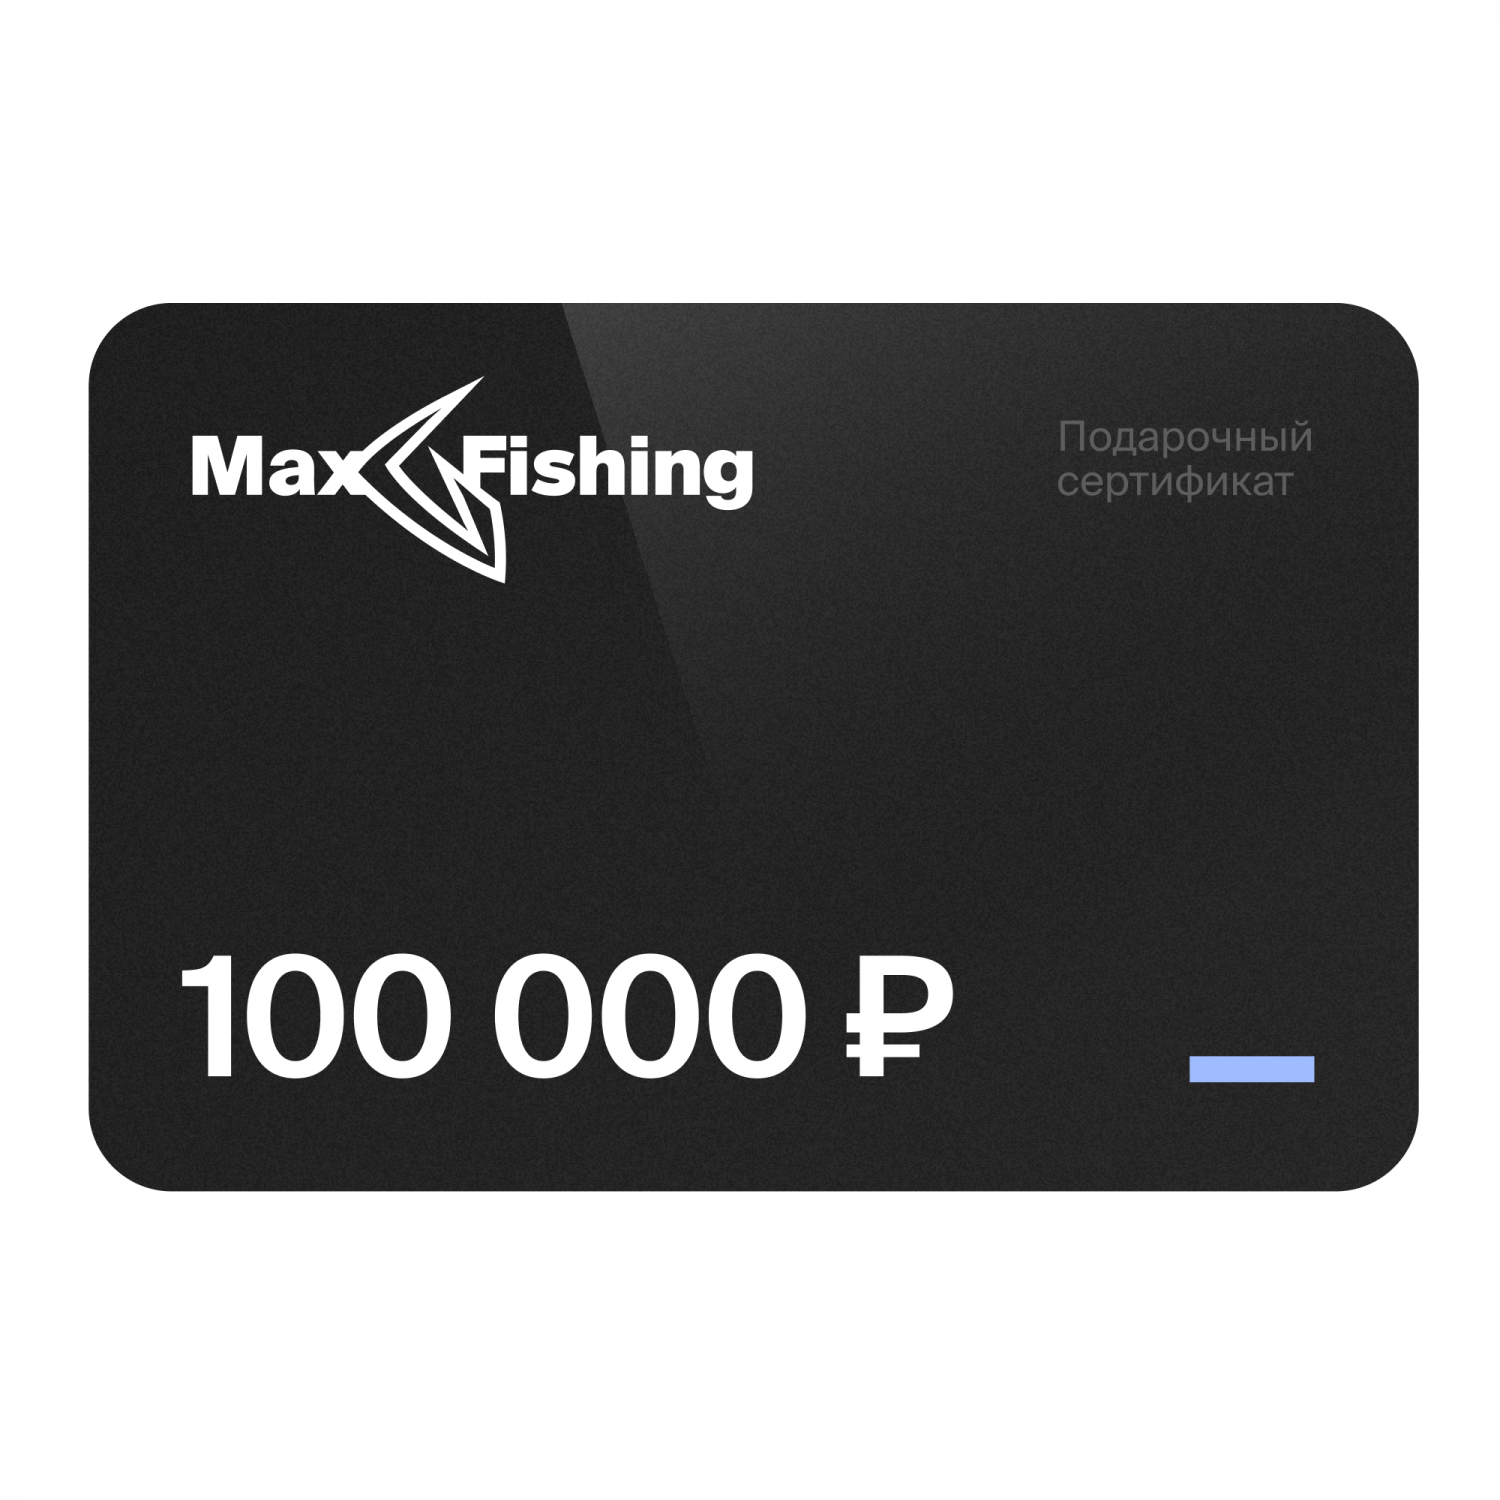 подарочный сертификат на 70 000 рублей Подарочный сертификат MaxFishing 100 000 ₽